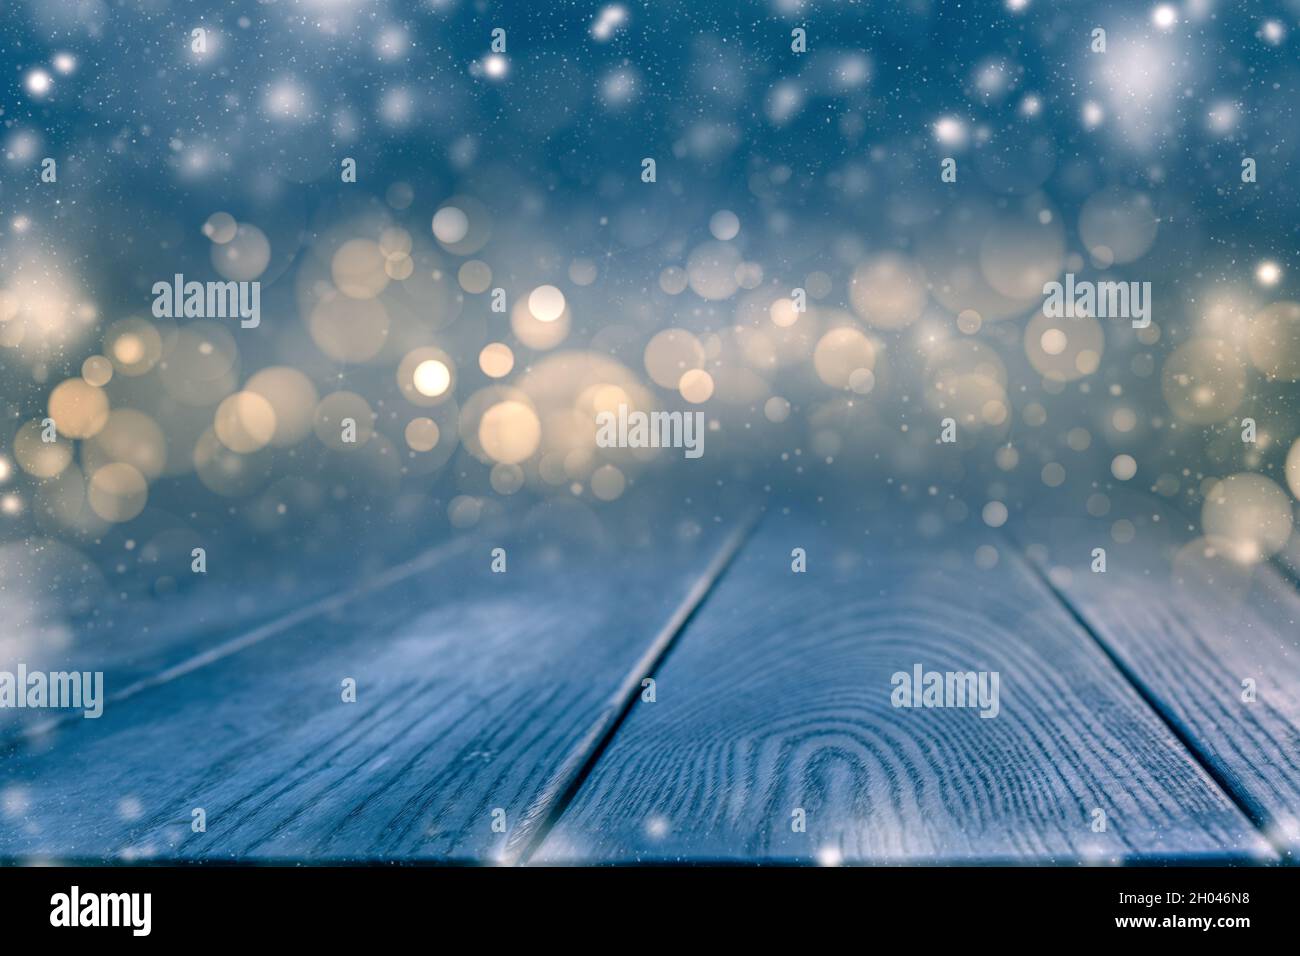 Vista panoramica notturna invernale con luci bokeh. Pannello in legno ricoperto di neve con spazio per copiare le idee dello yoir. Foto Stock